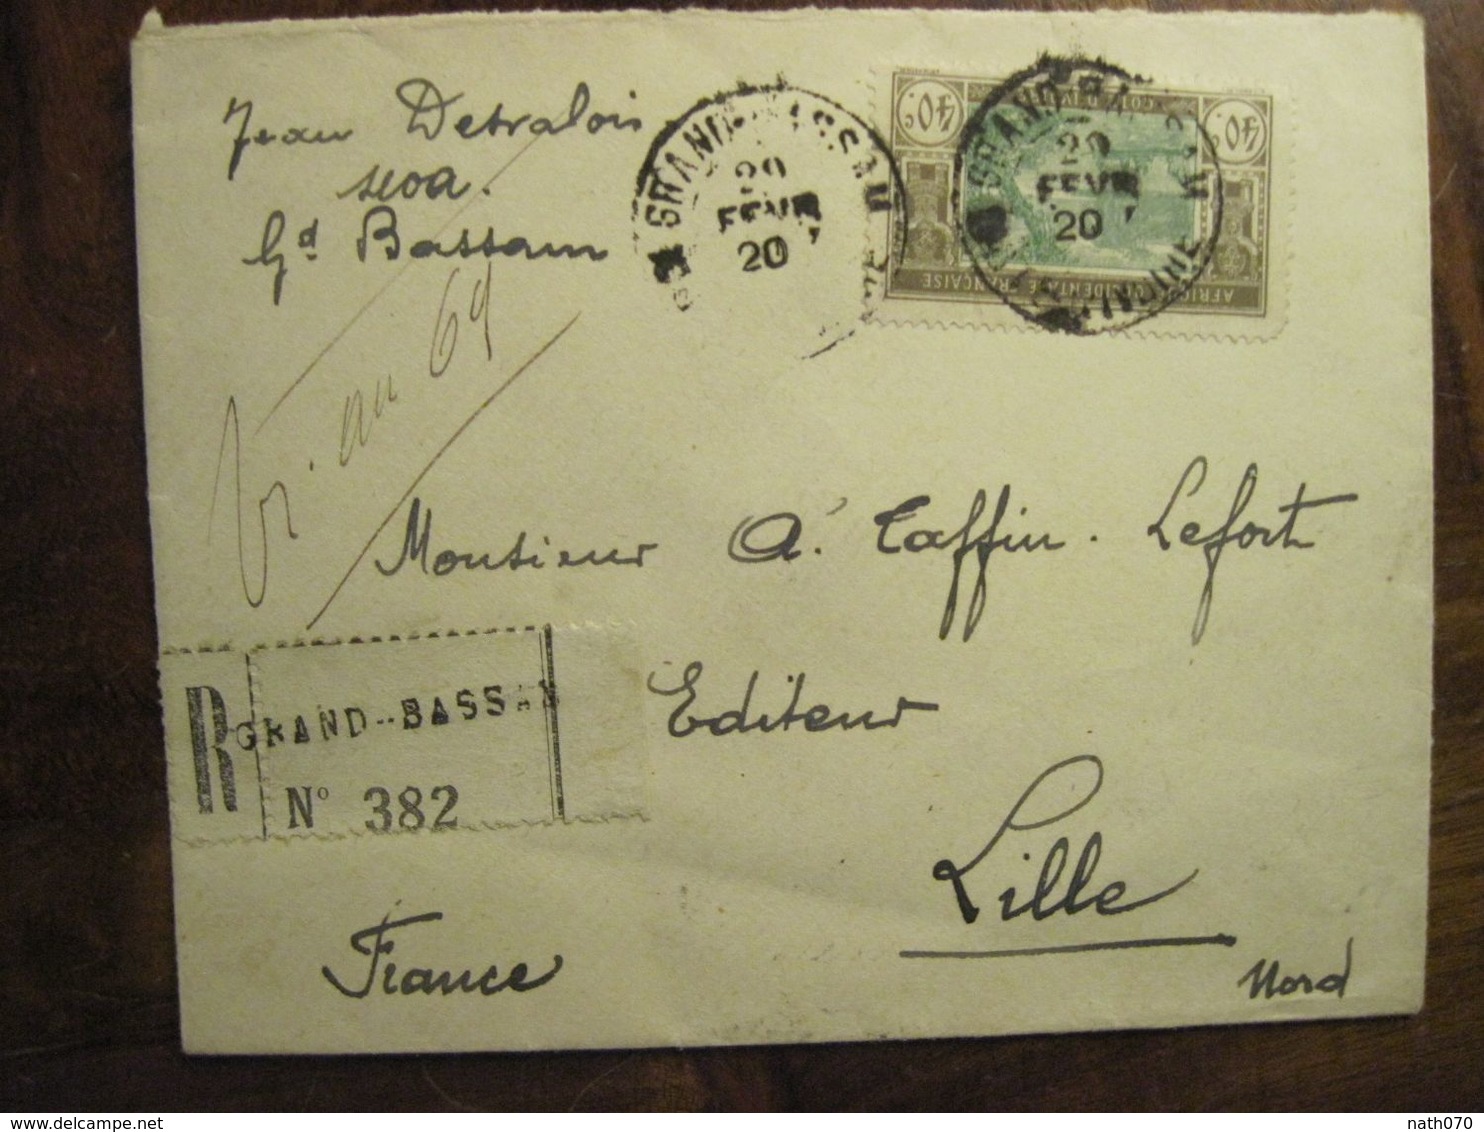 Cote D'Ivoire 1920 France Grand Bassam Lettre Enveloppe Cover Colonie Recommandé Reco AOF Taffin Lefort - Lettres & Documents